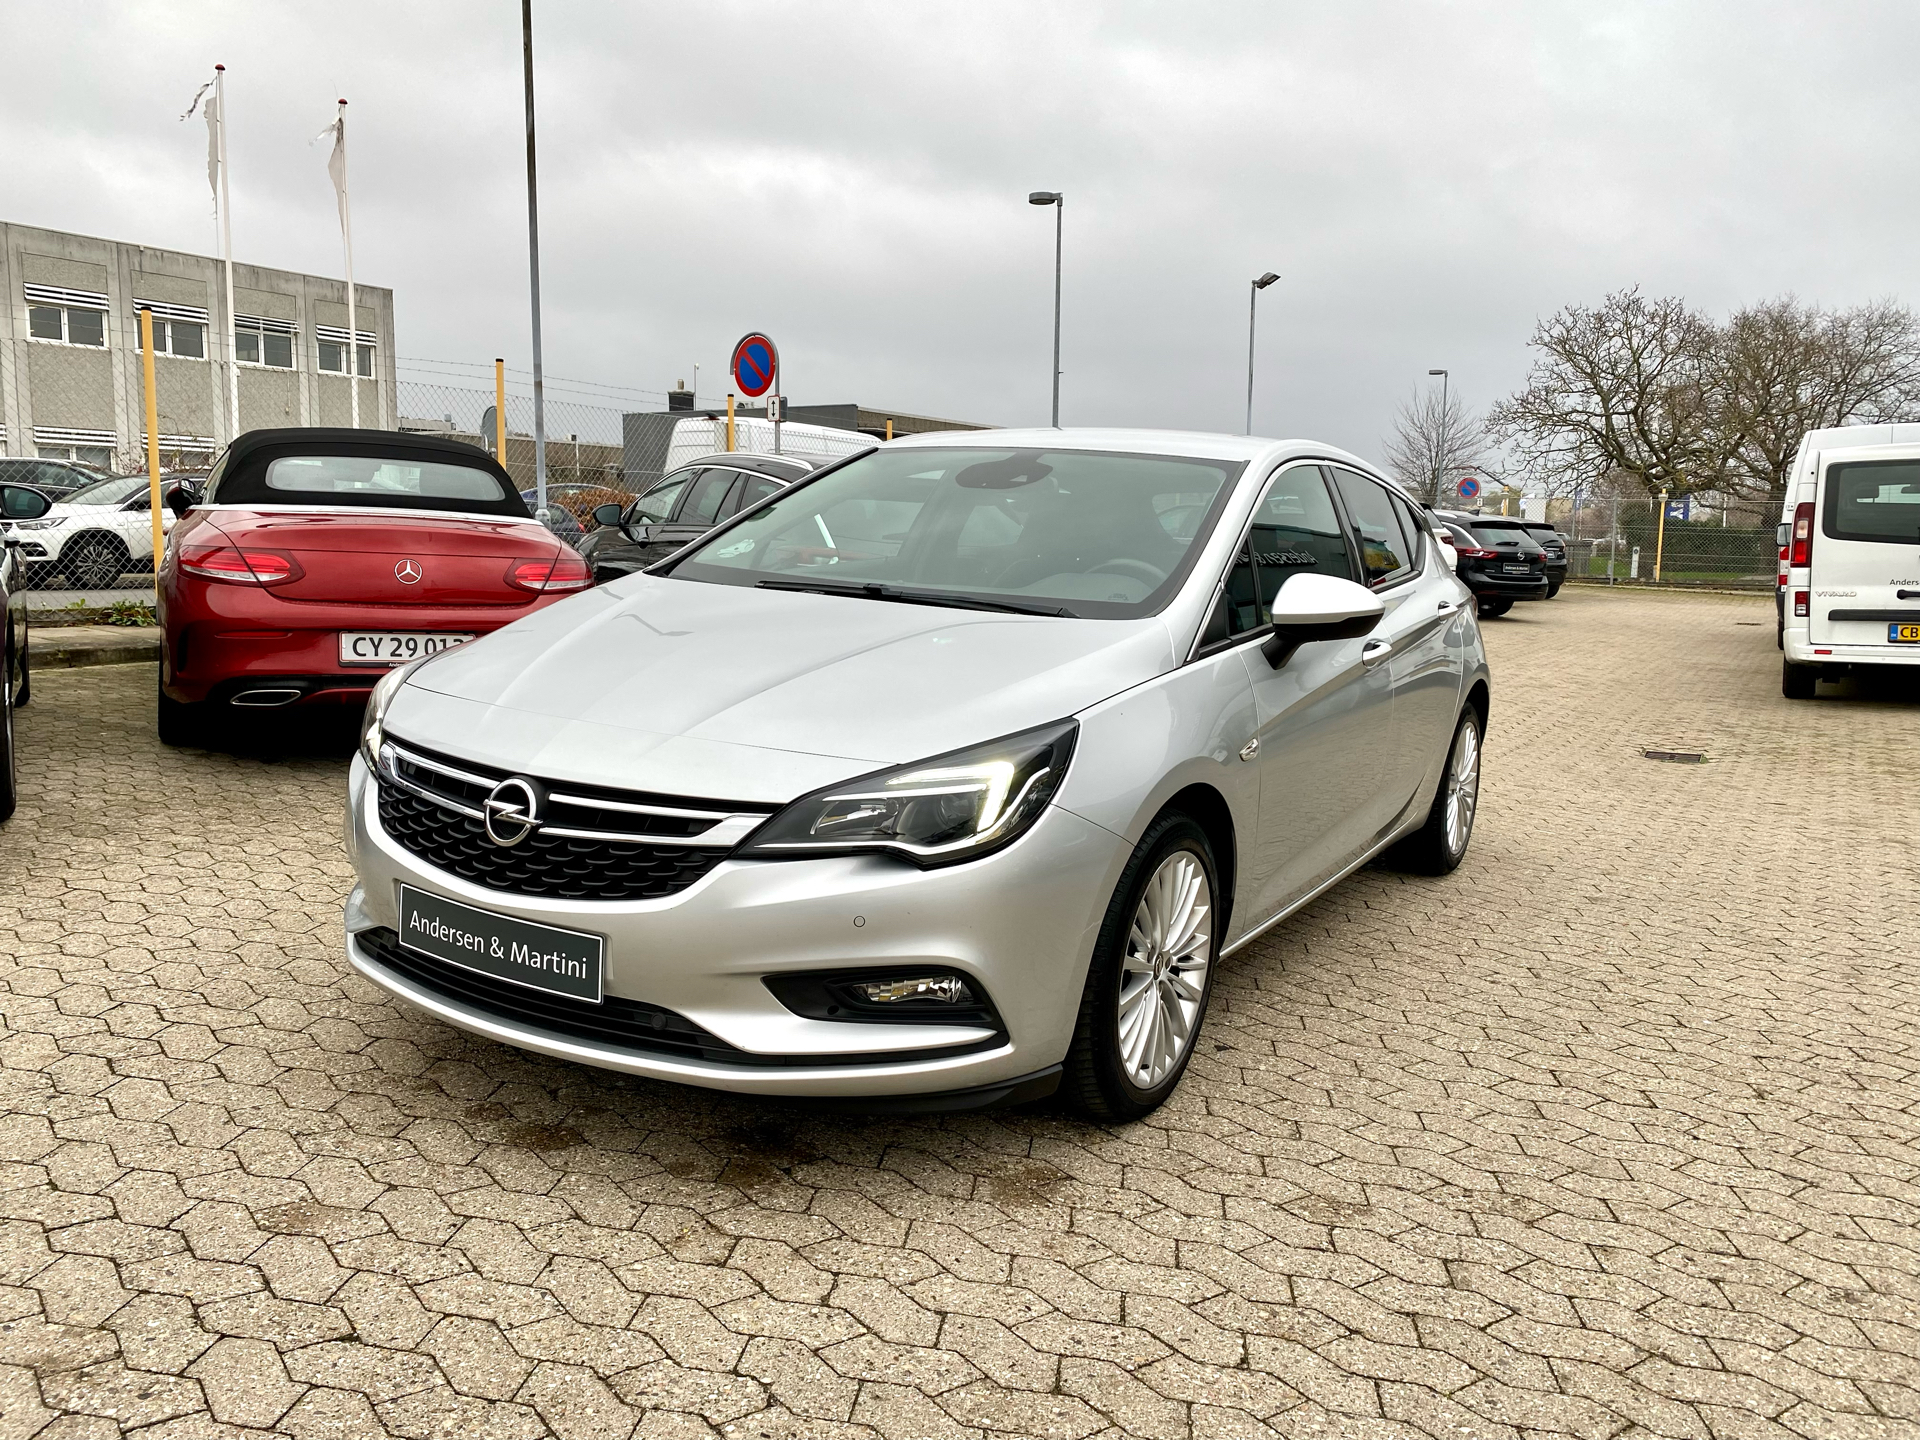 Billede af Opel Astra 1,6 CDTI INNOVATION 136HK 5d 6g